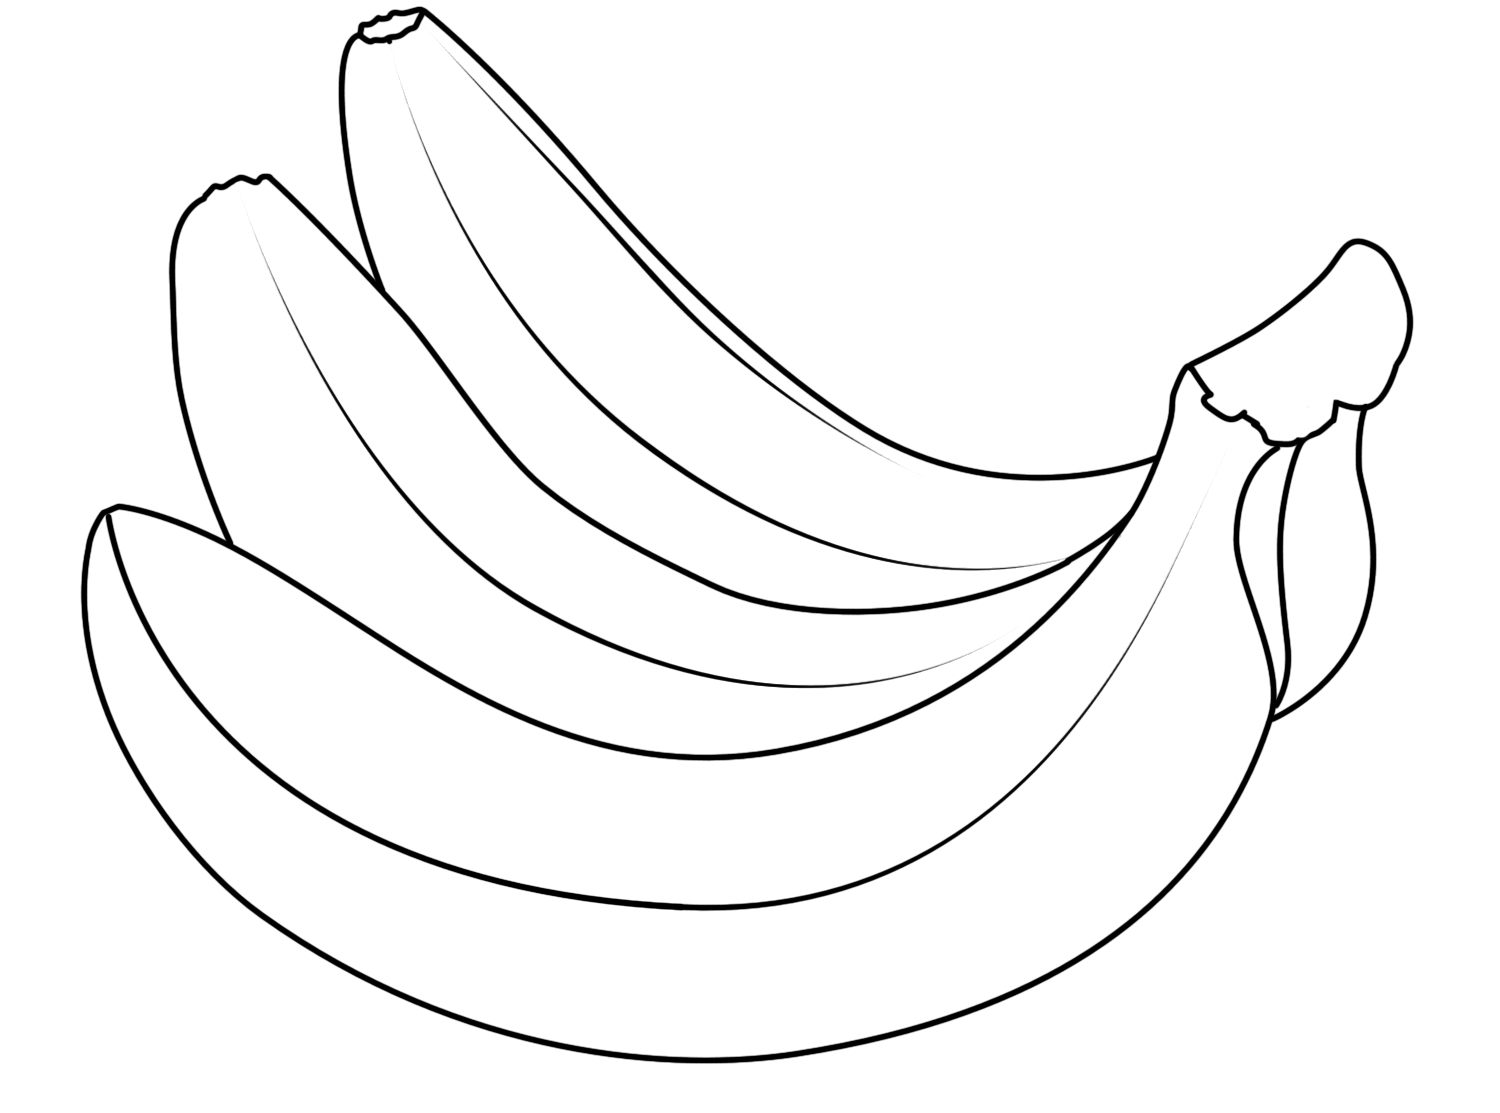 Coloring Banana Fruits